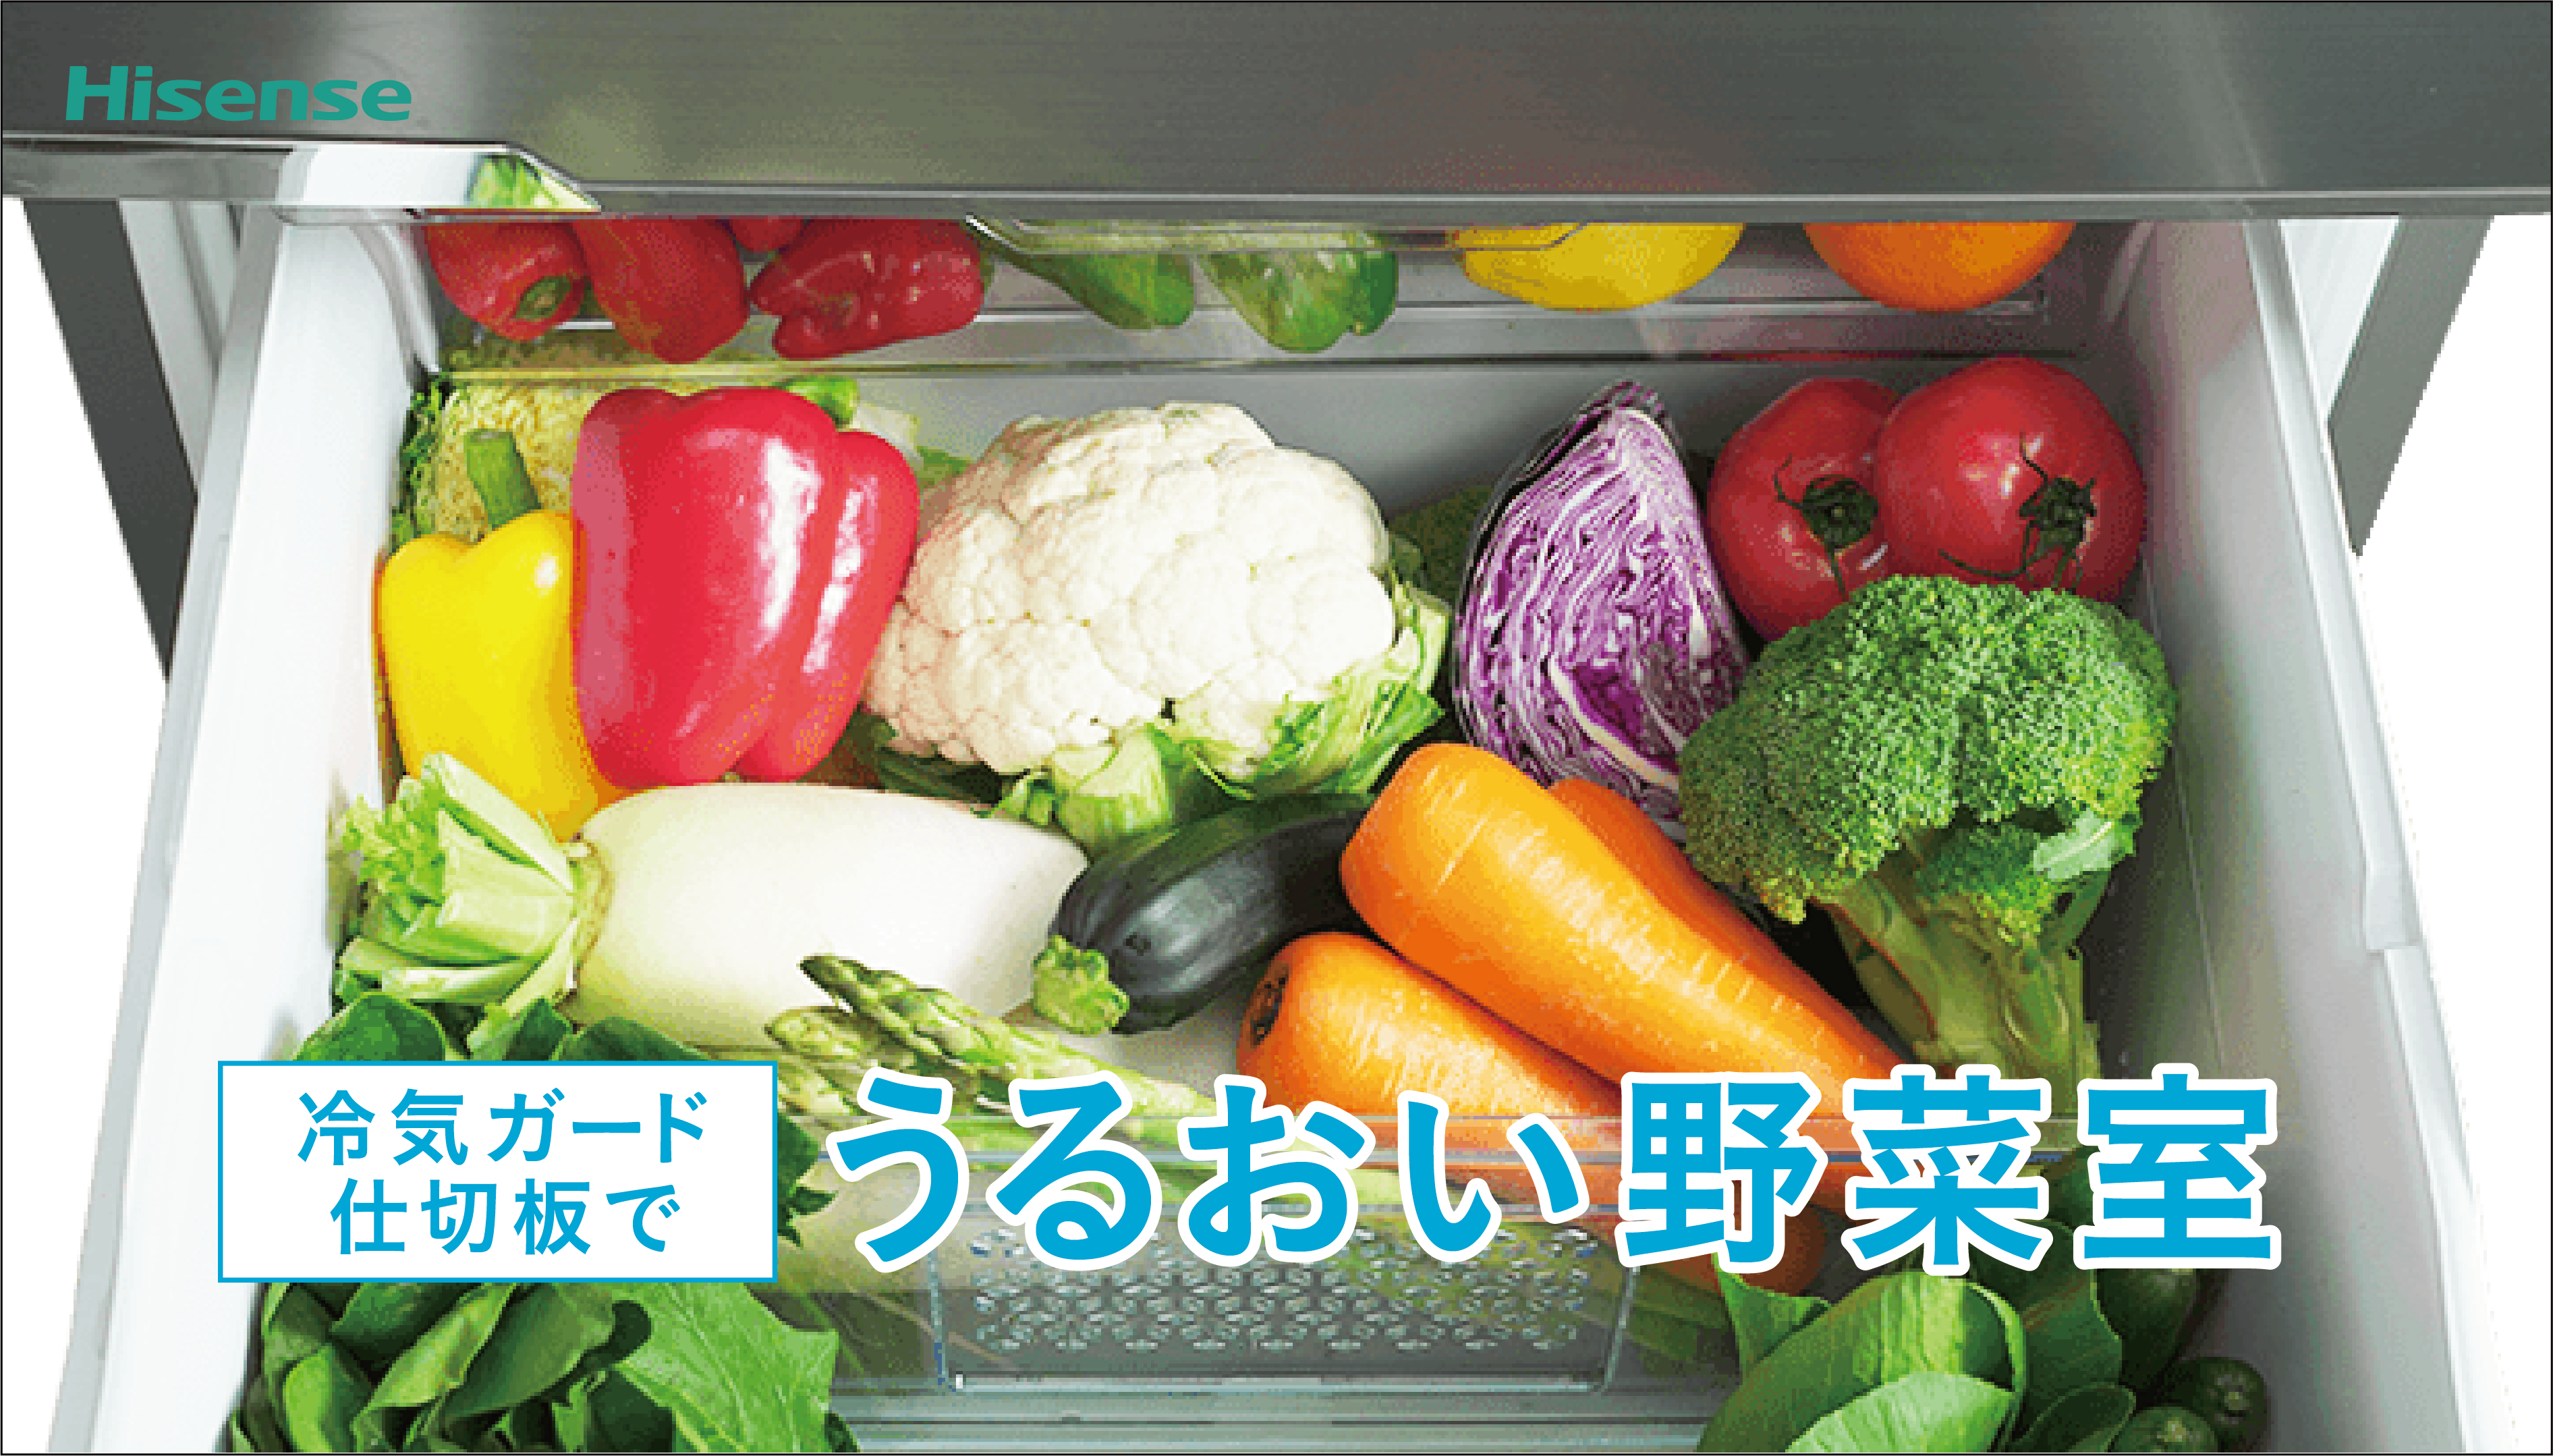 360L HR-D3601S 冷凍冷蔵庫 | ハイセンスジャパン株式会社